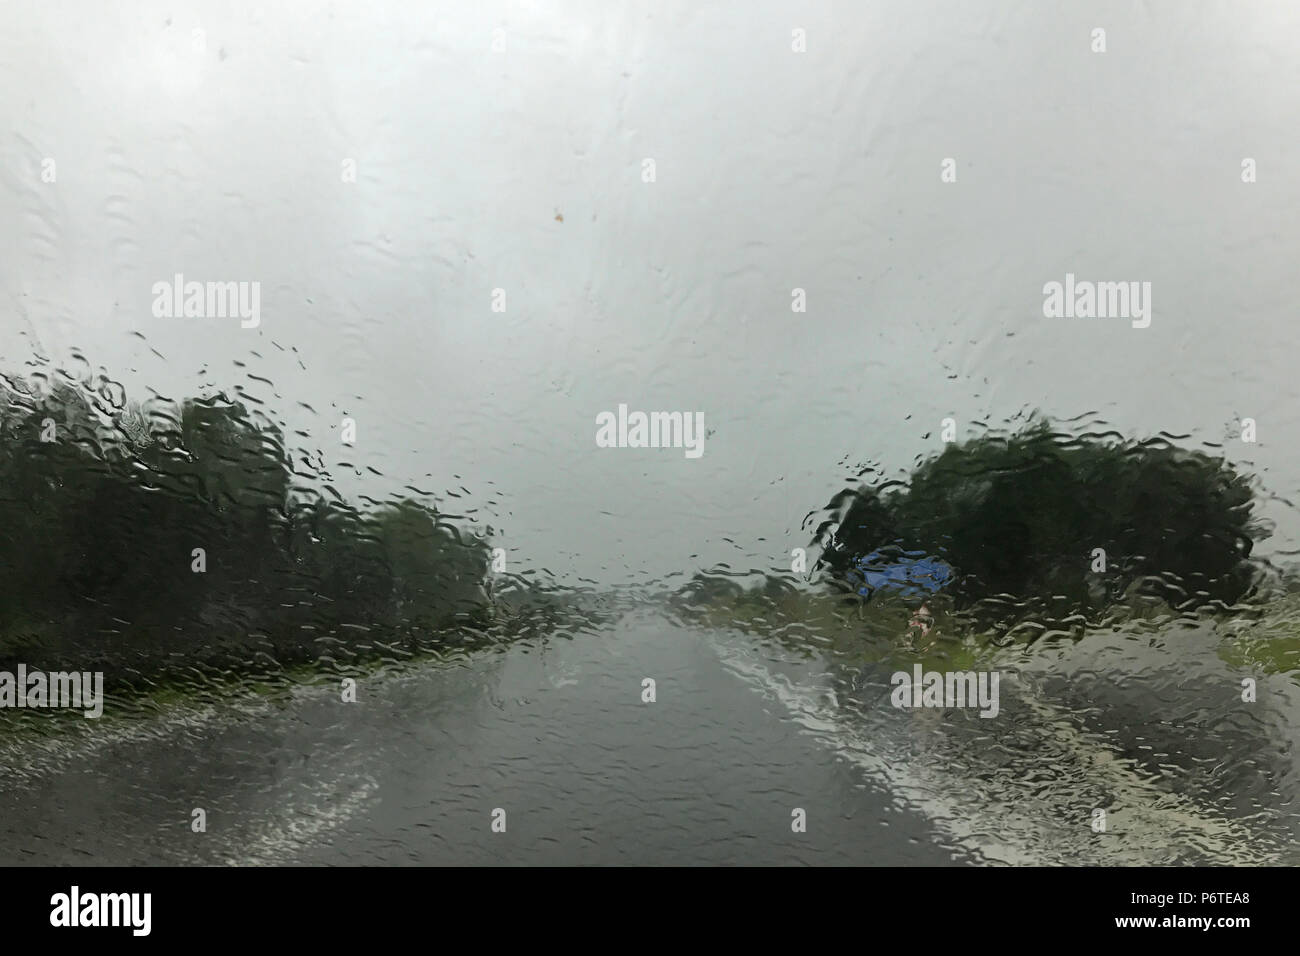 Berlin, Allemagne, la mauvaise visibilité lors de fortes pluies sur une route de campagne Banque D'Images